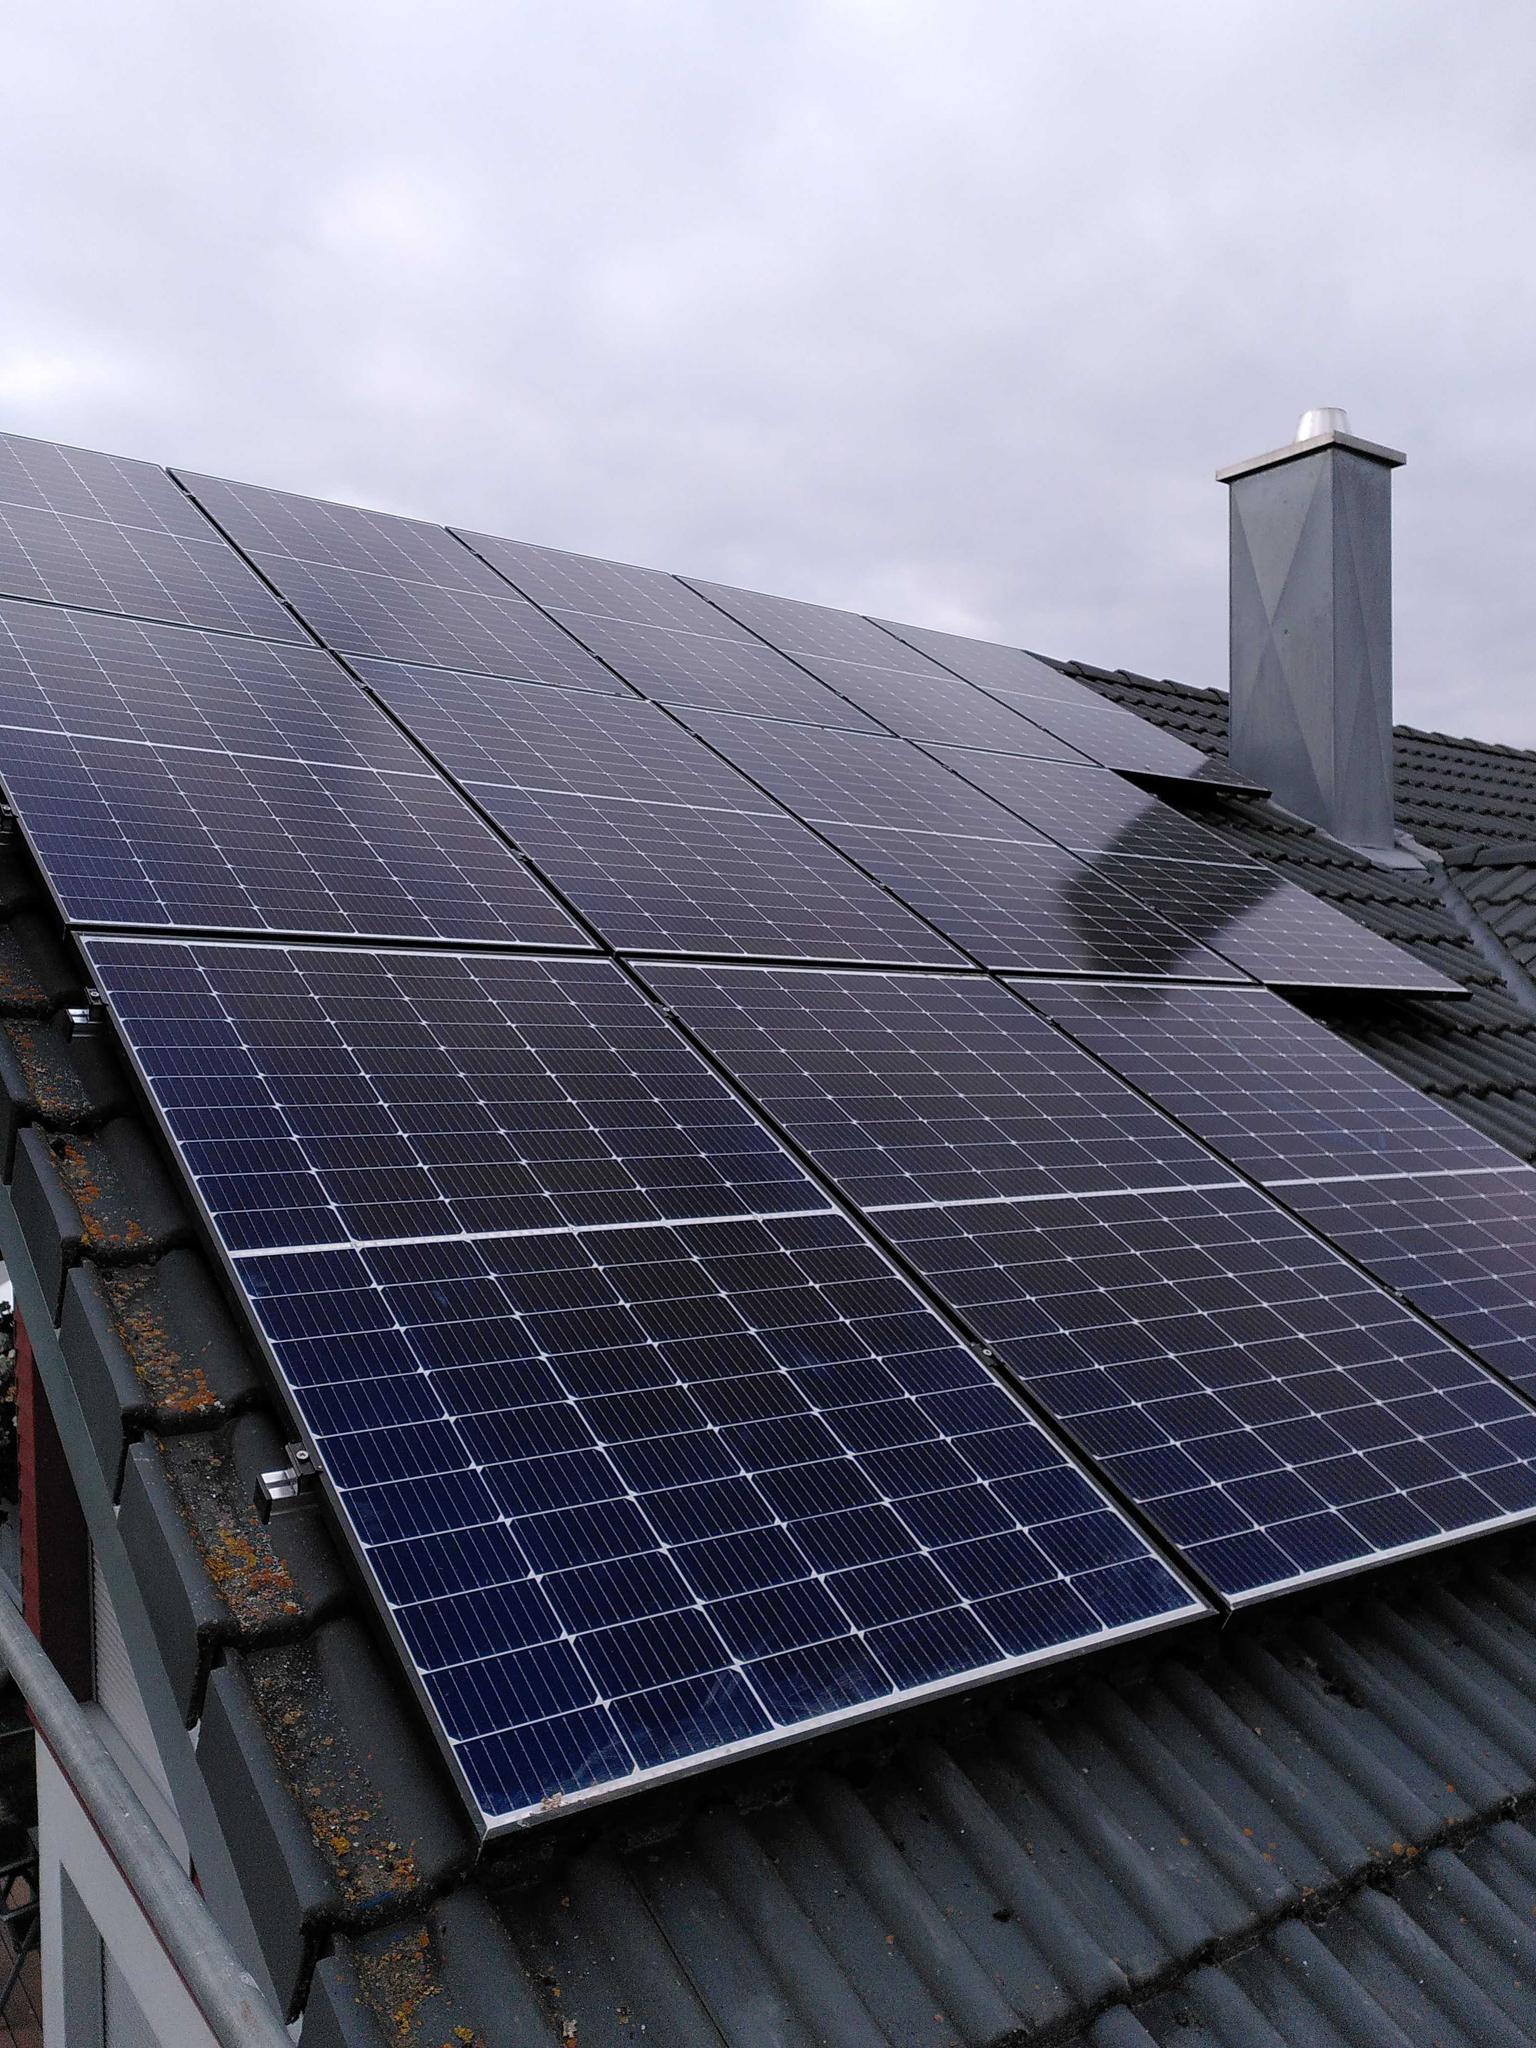 Solarmodule auf einem Dach - zolar in der eco-innovation